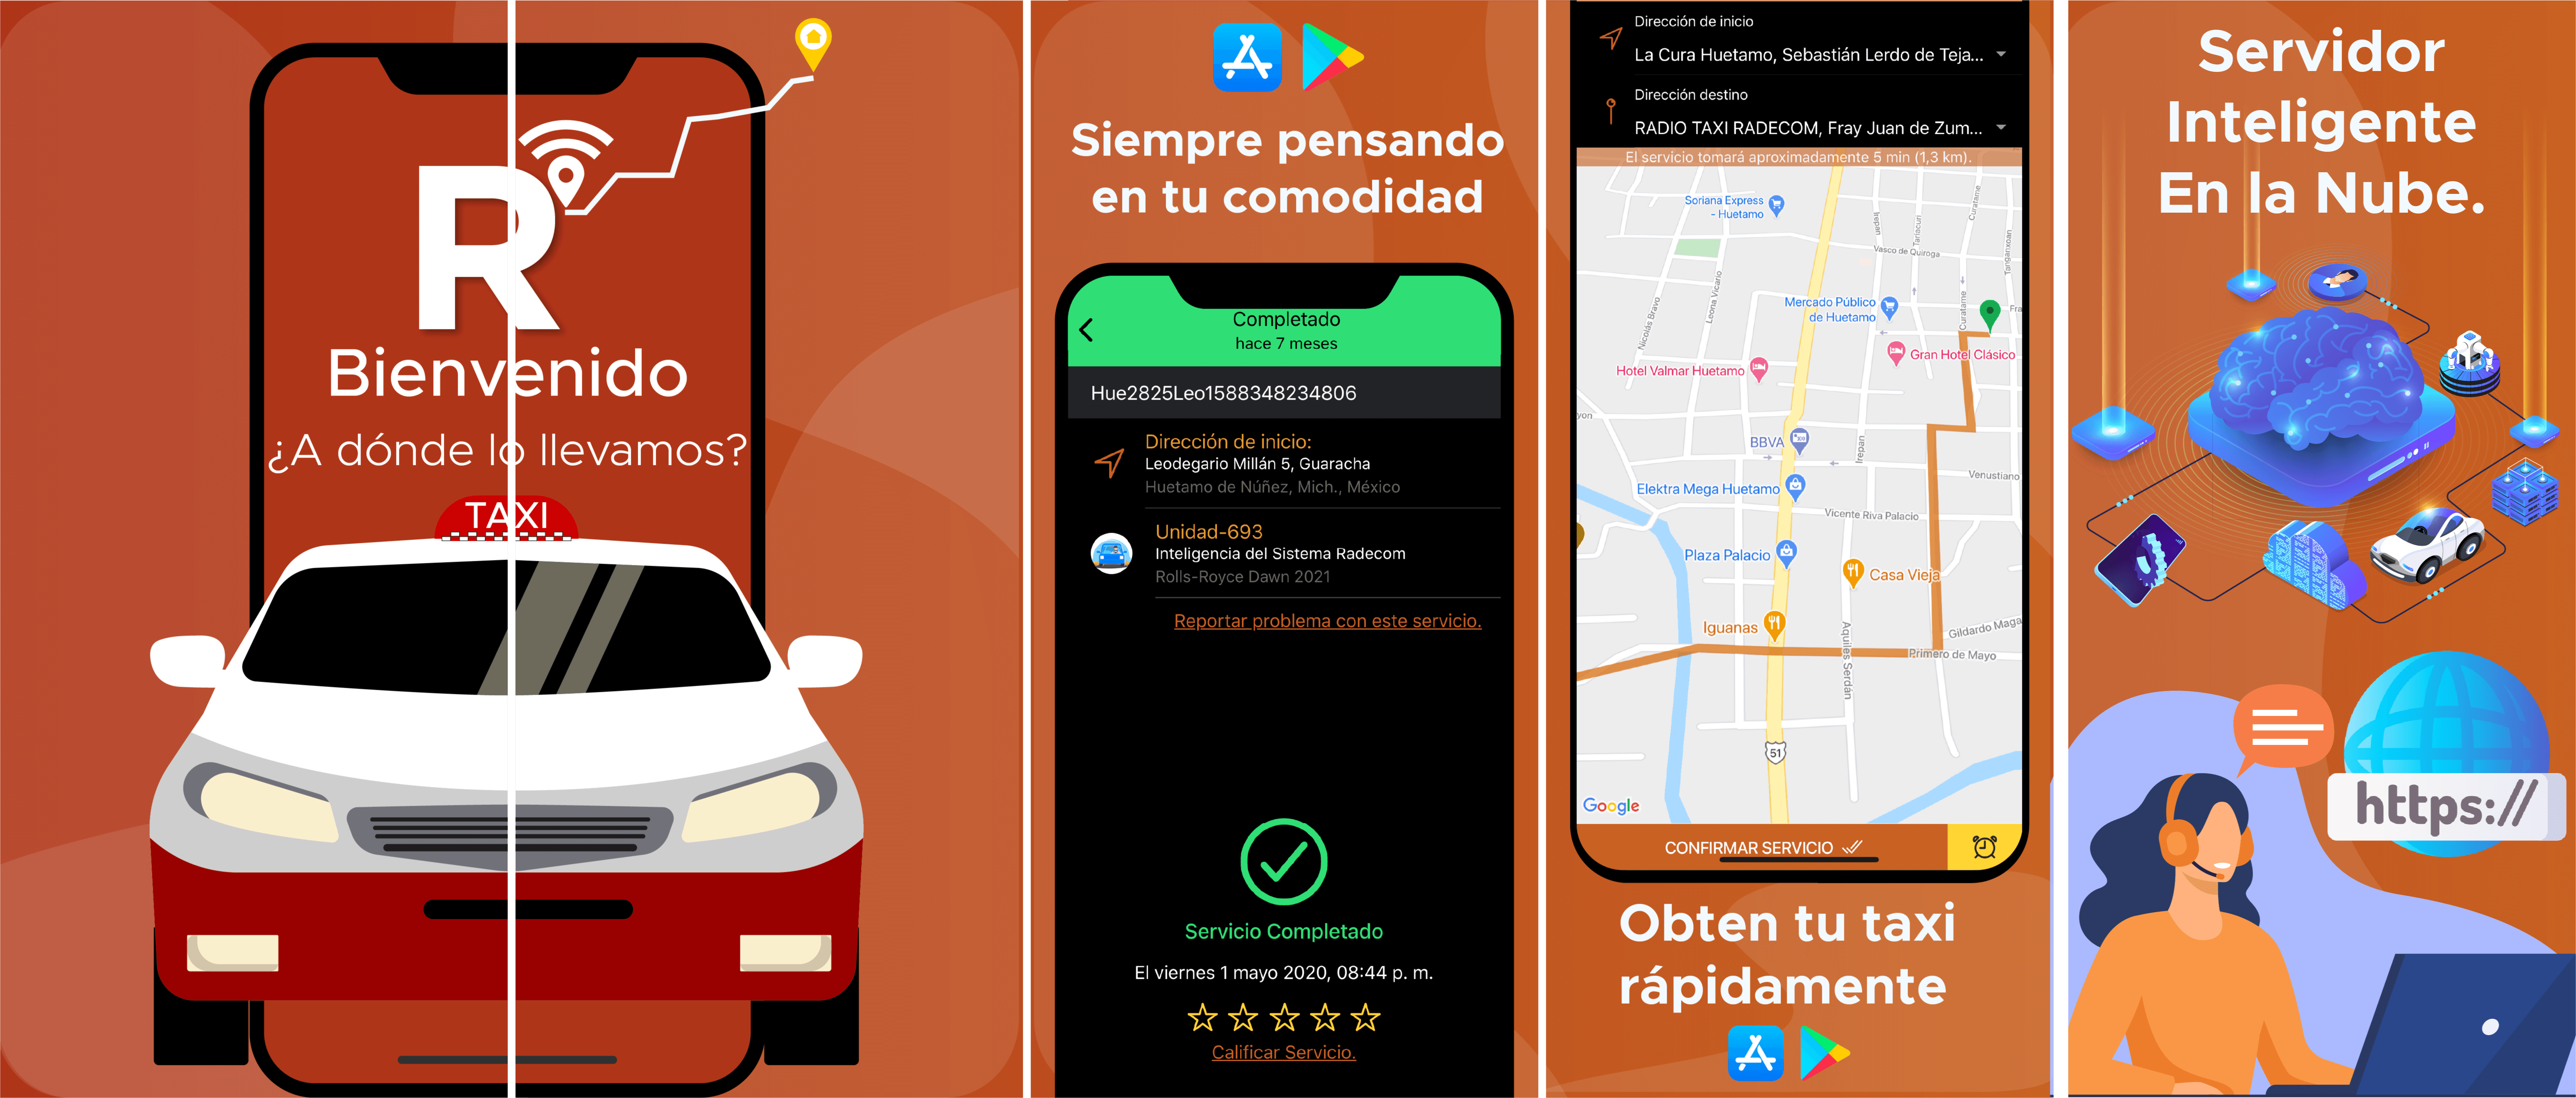 Resultado de Desarrollo de App de Taxis Demo